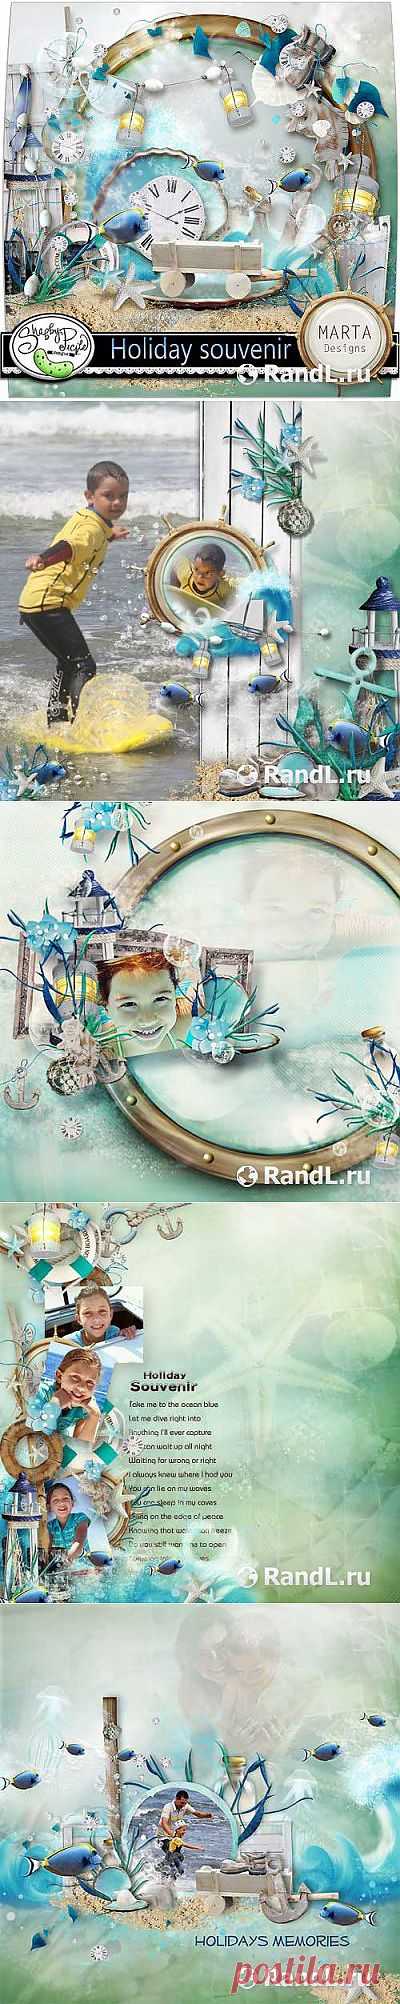 Морской скрап-комплект - Сувенир с отдыха » RandL.ru - Все о графике, photoshop и дизайне. Скачать бесплатно photoshop, фото, картинки, обои, рисунки, иконки, клипарты, шаблоны.